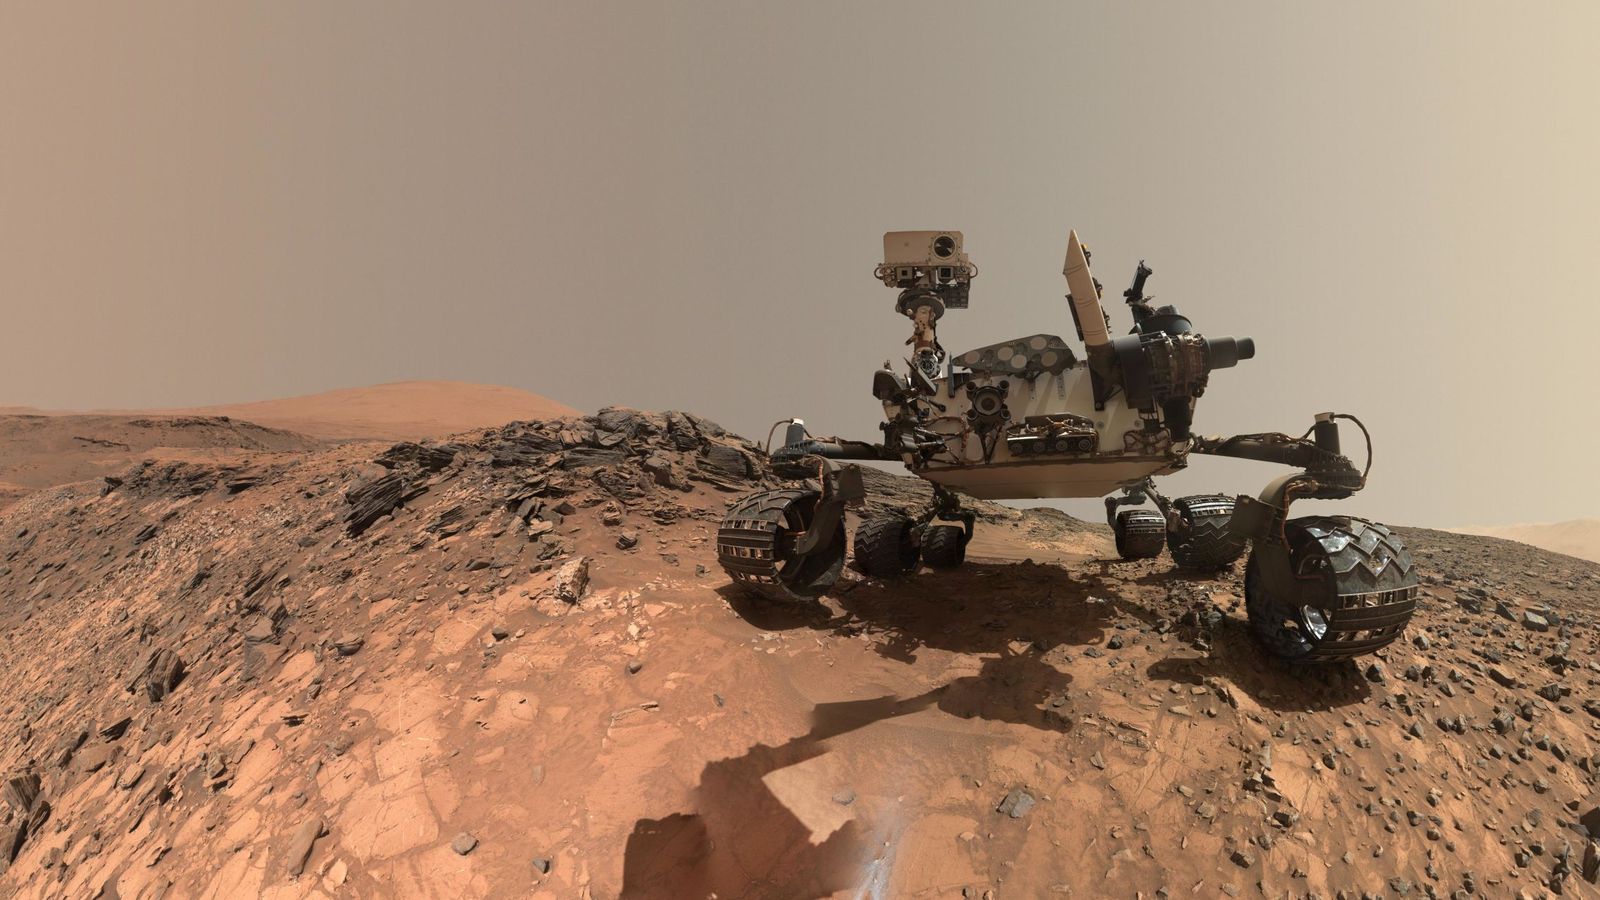 Foto: Curiosity, el robot explorador de la NASA en Marte. (EFE)